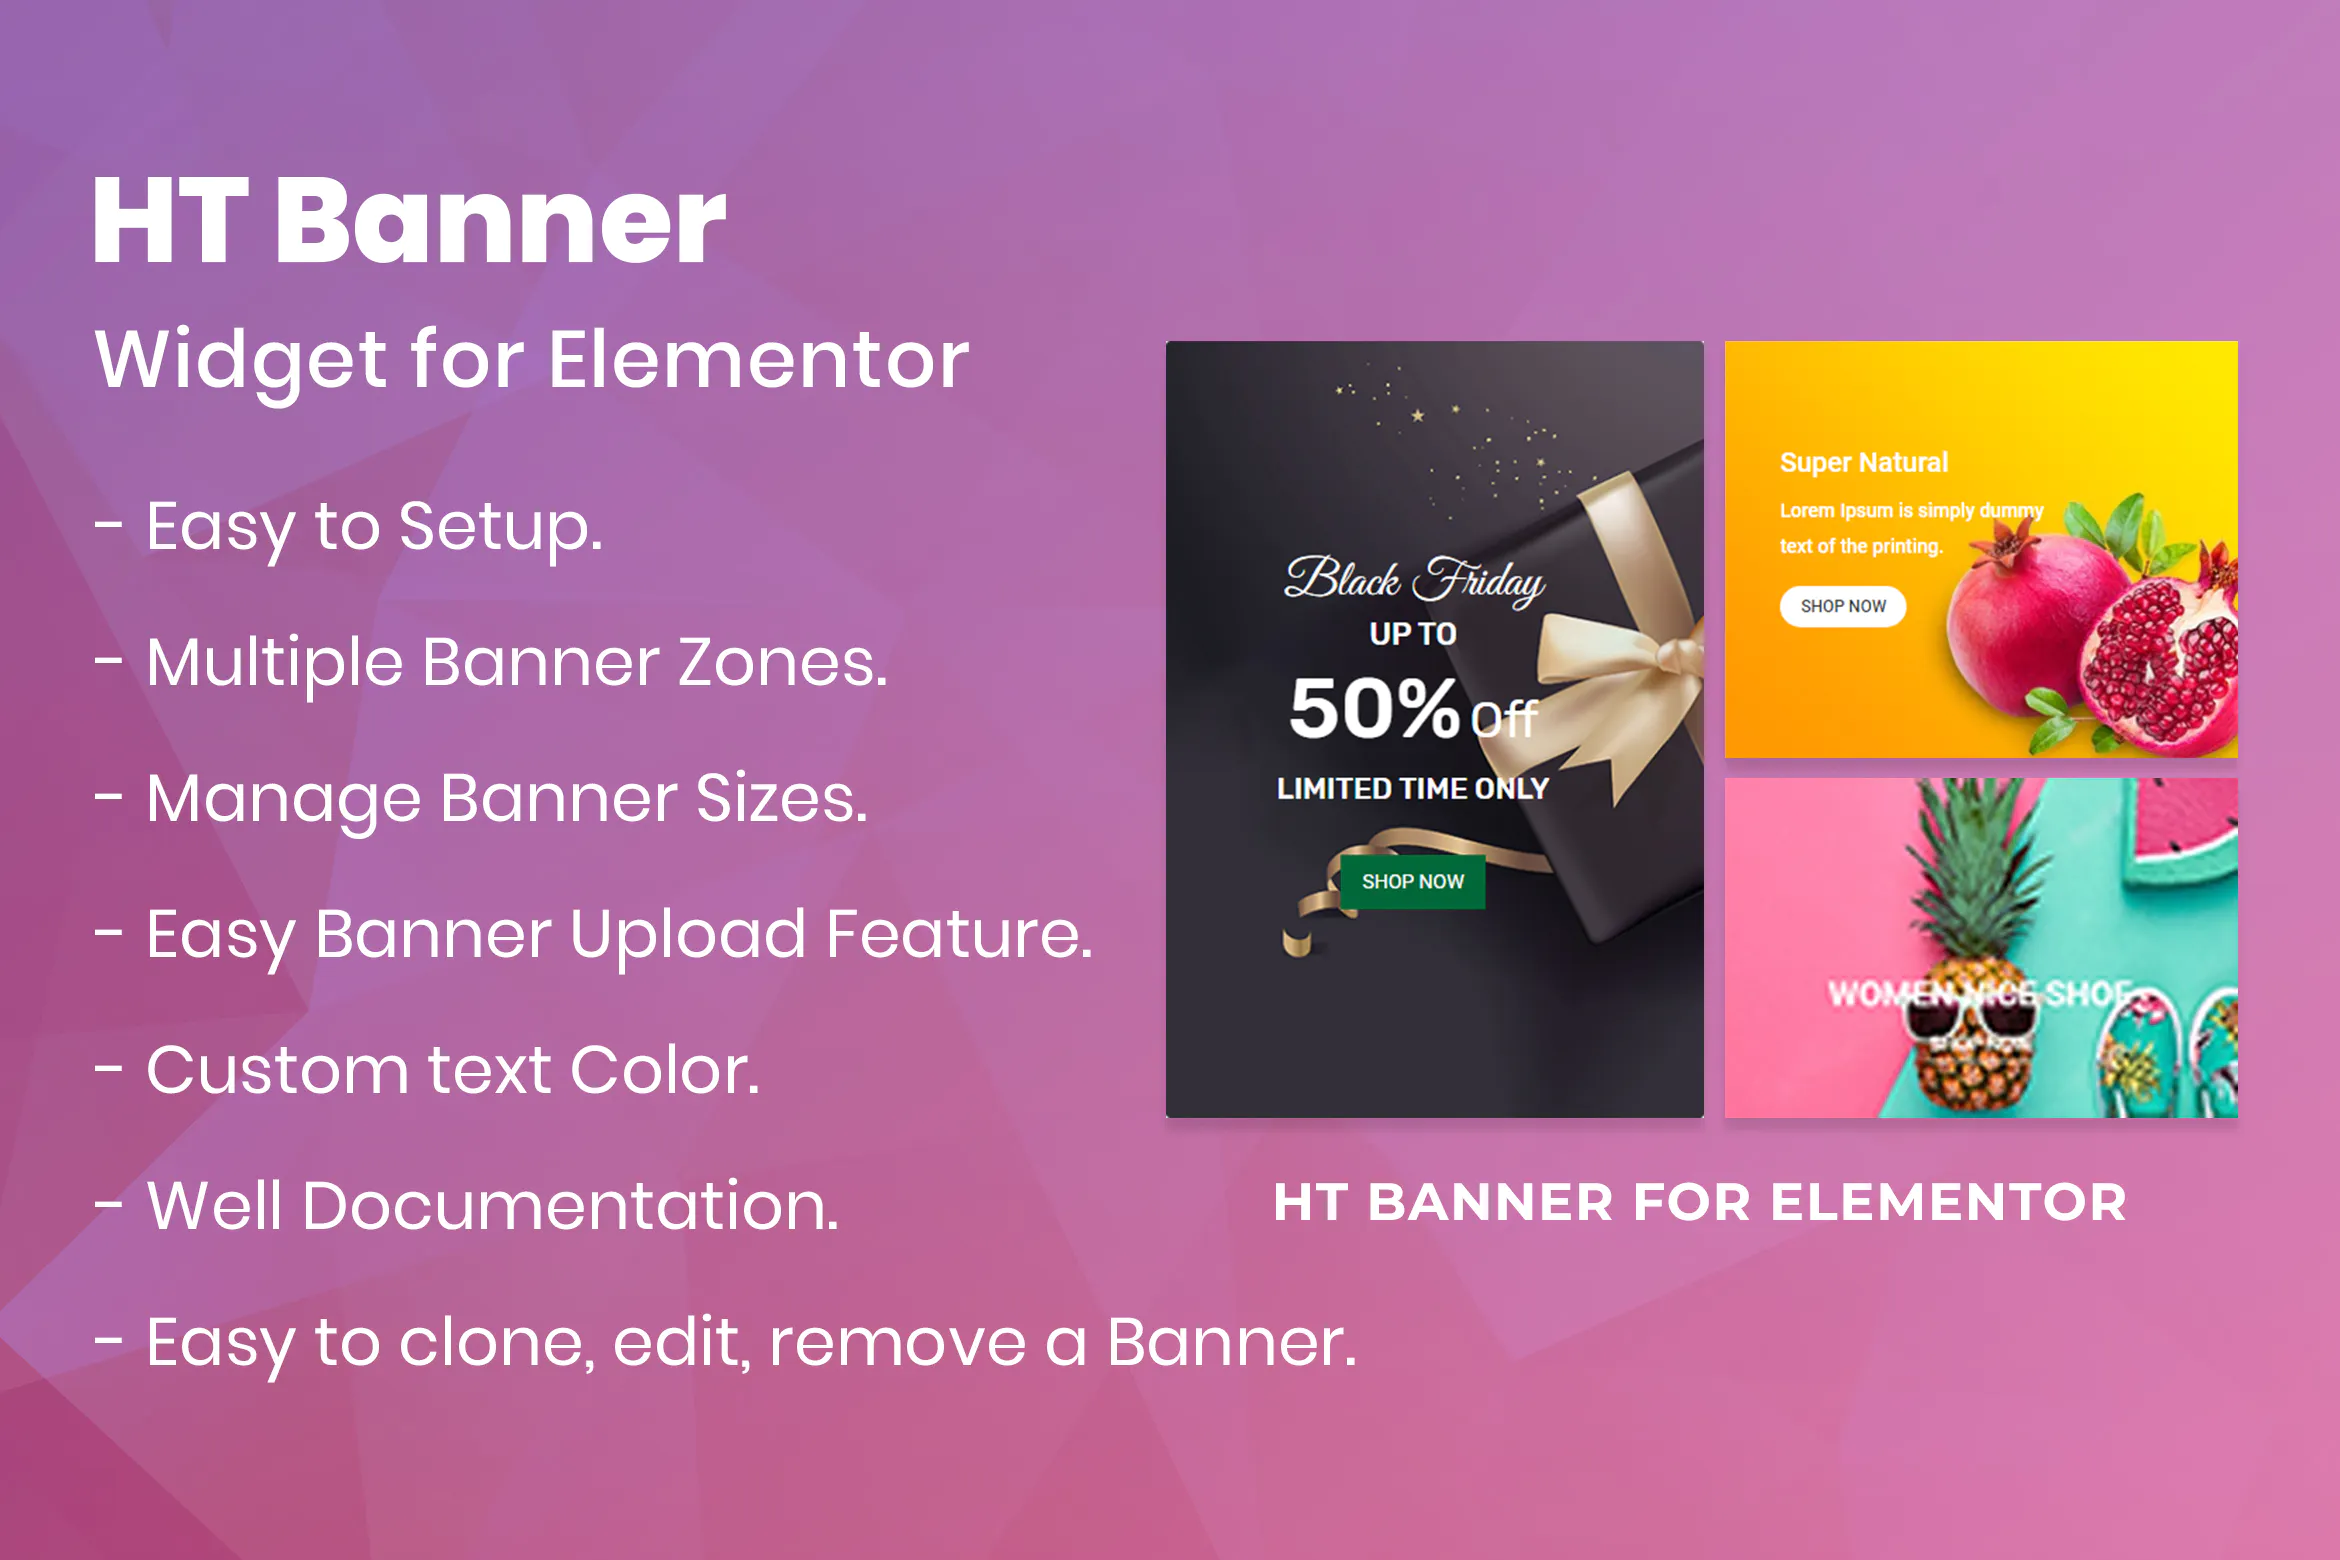 HT Banner for Elementor